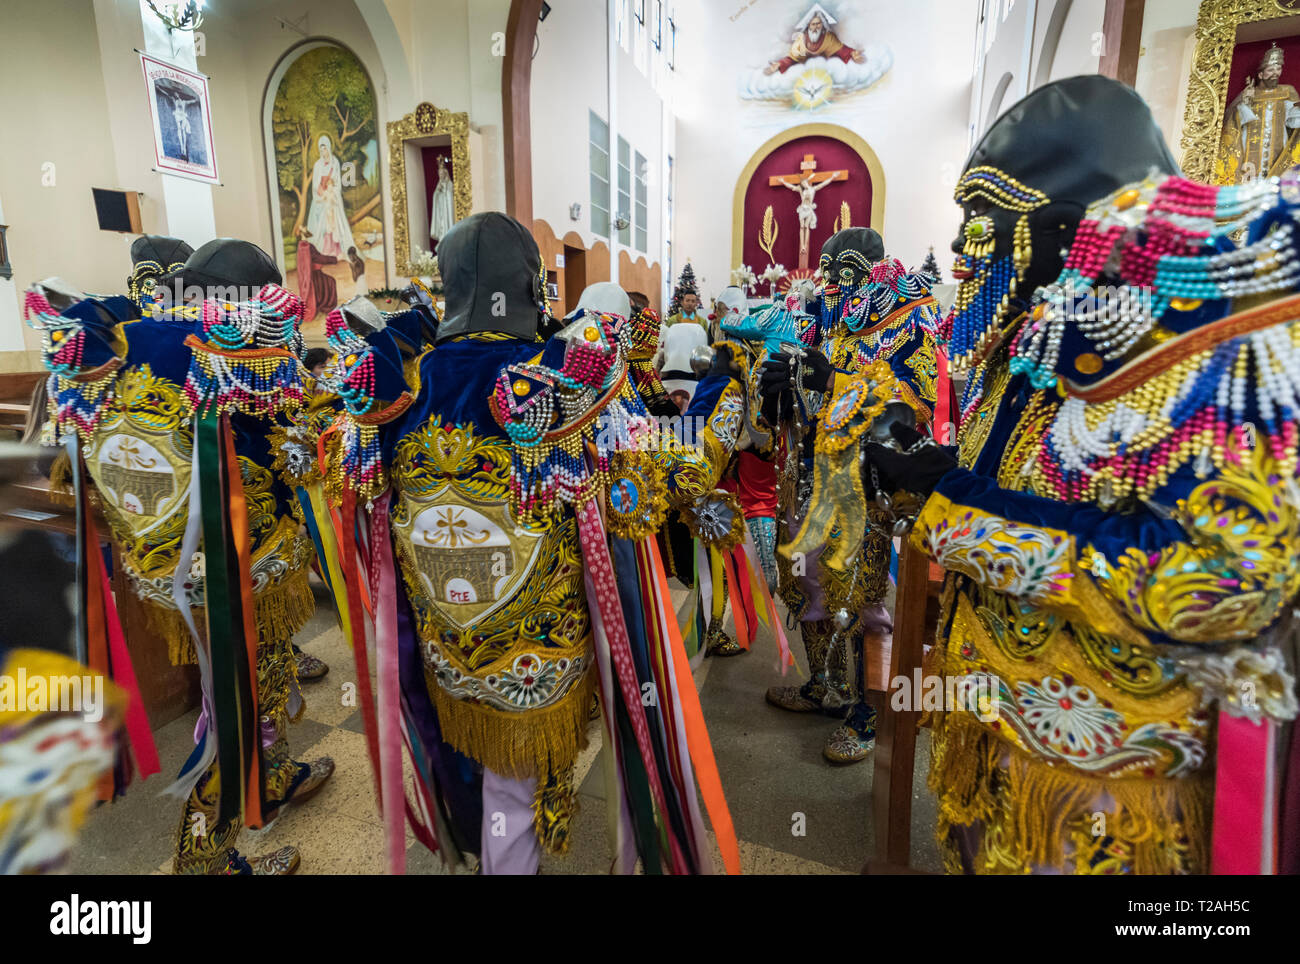 Negritos von Huánuco, traditionellen Peruanischen Anden Tanz, huánuco Region, Peru Südamerika. Stockfoto